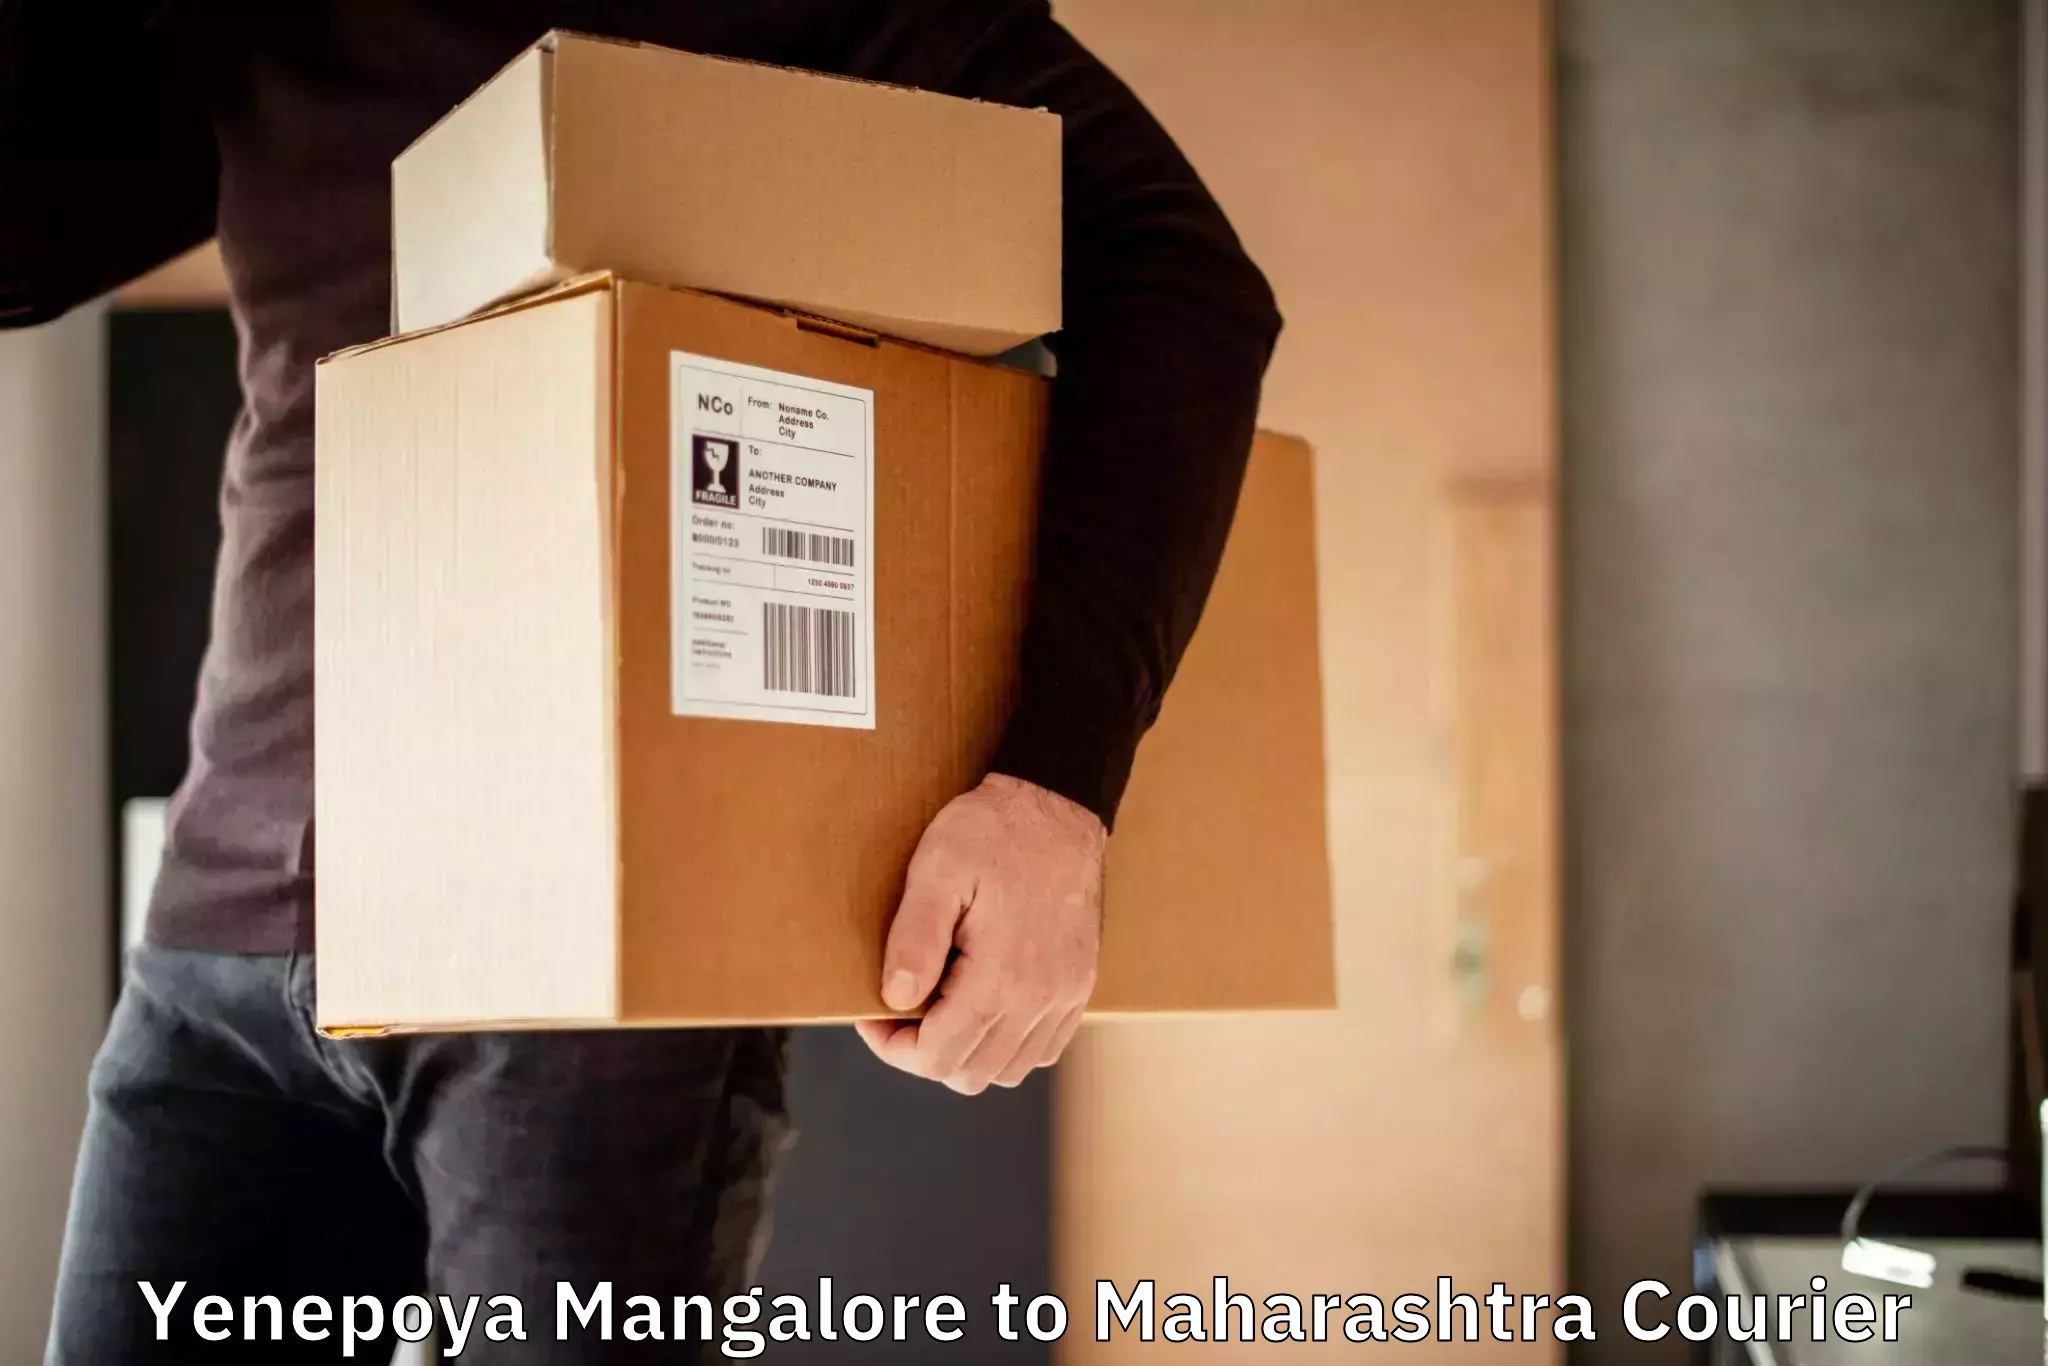 Overnight delivery services Yenepoya Mangalore to Maharashtra